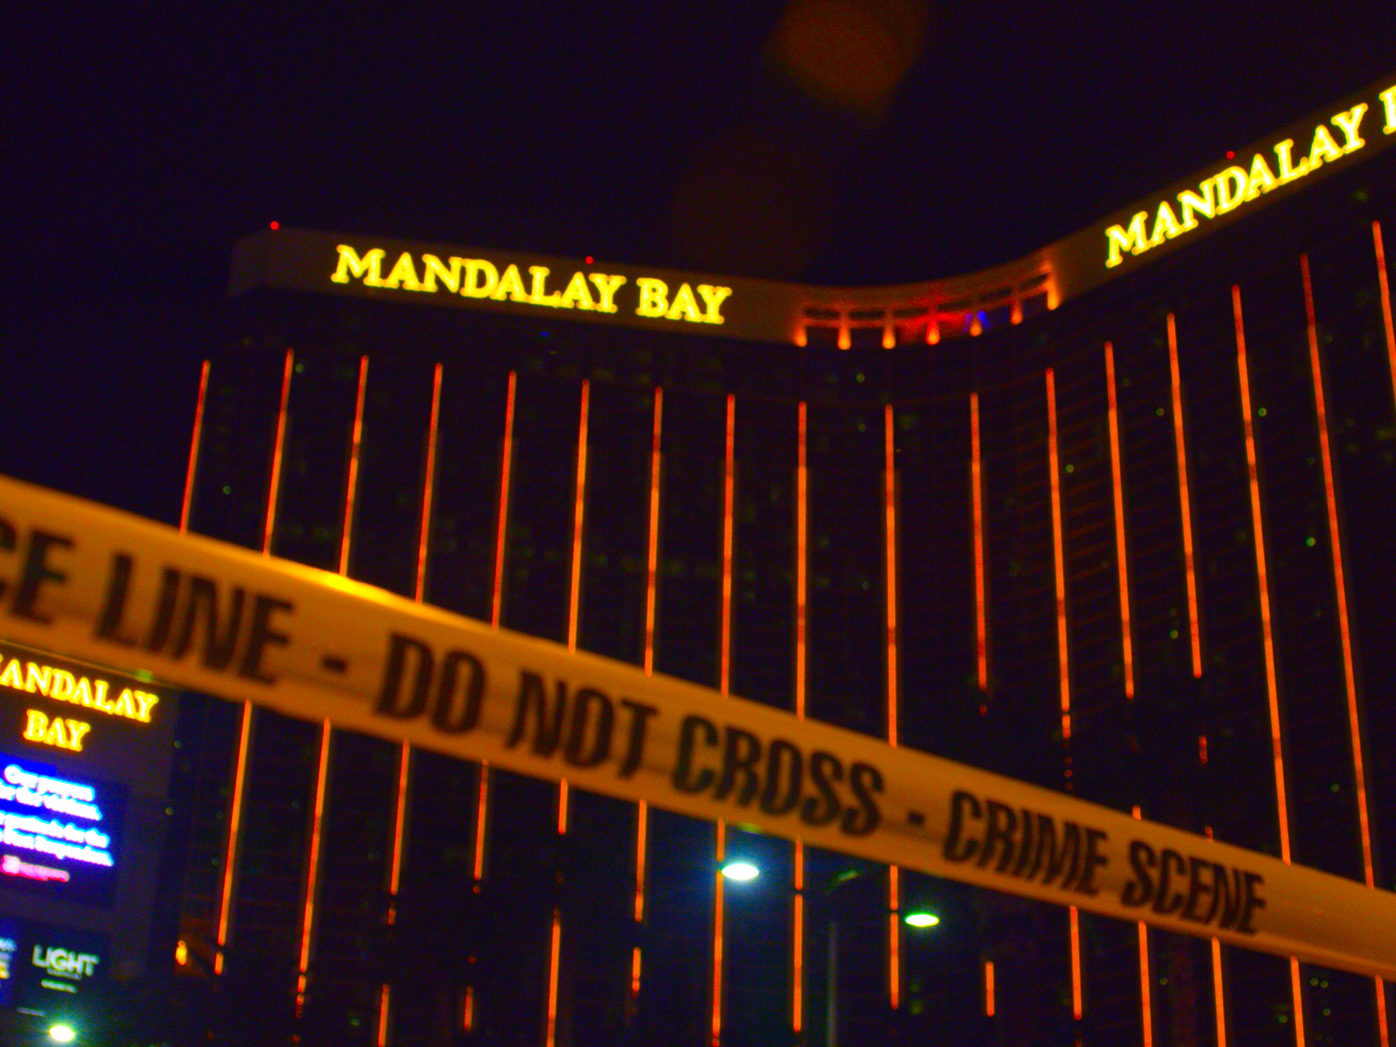 Una fotografía del hotel Mandalay Bay, propiedad de MGM Resorts, donde Stephen Paddock llevó a cabo el tiroteo masivo más mortífero en la historia de Estados Unidos.